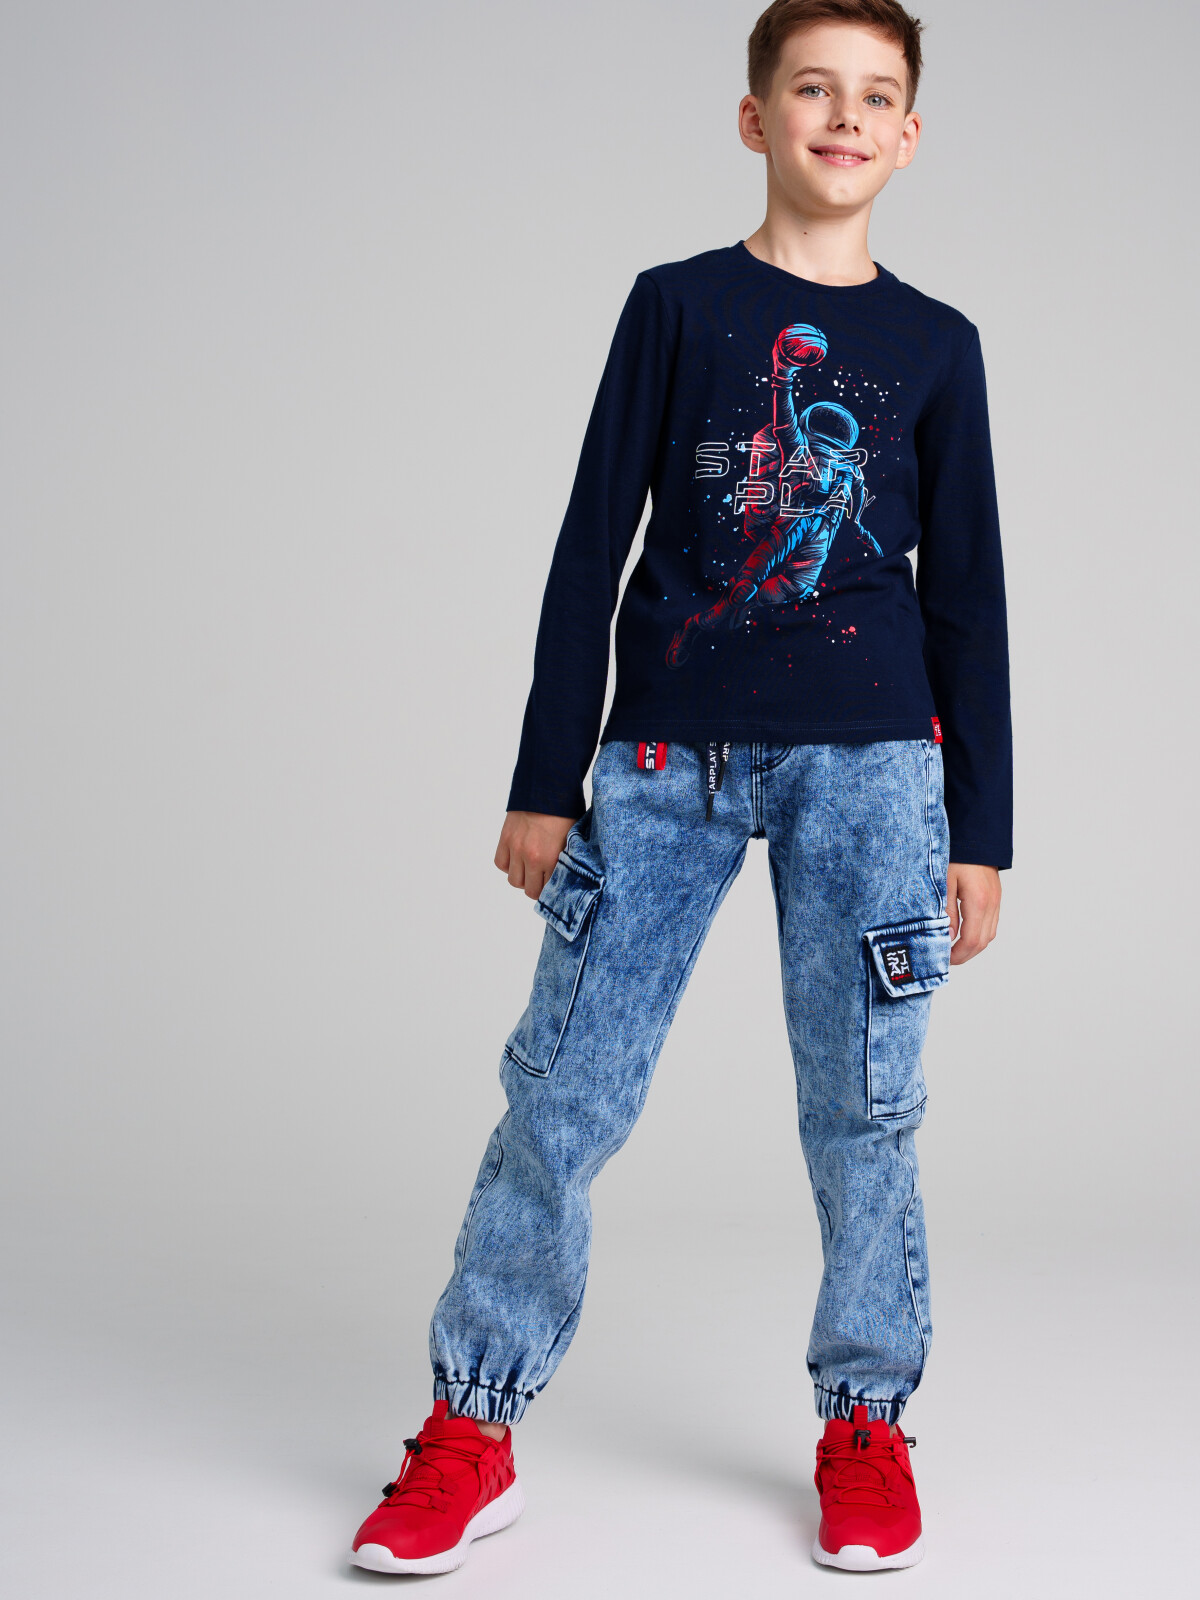 Брюки текстильные джинсовые утепленные флисом для мальчиков PlayToday, тёмно-синий, 128